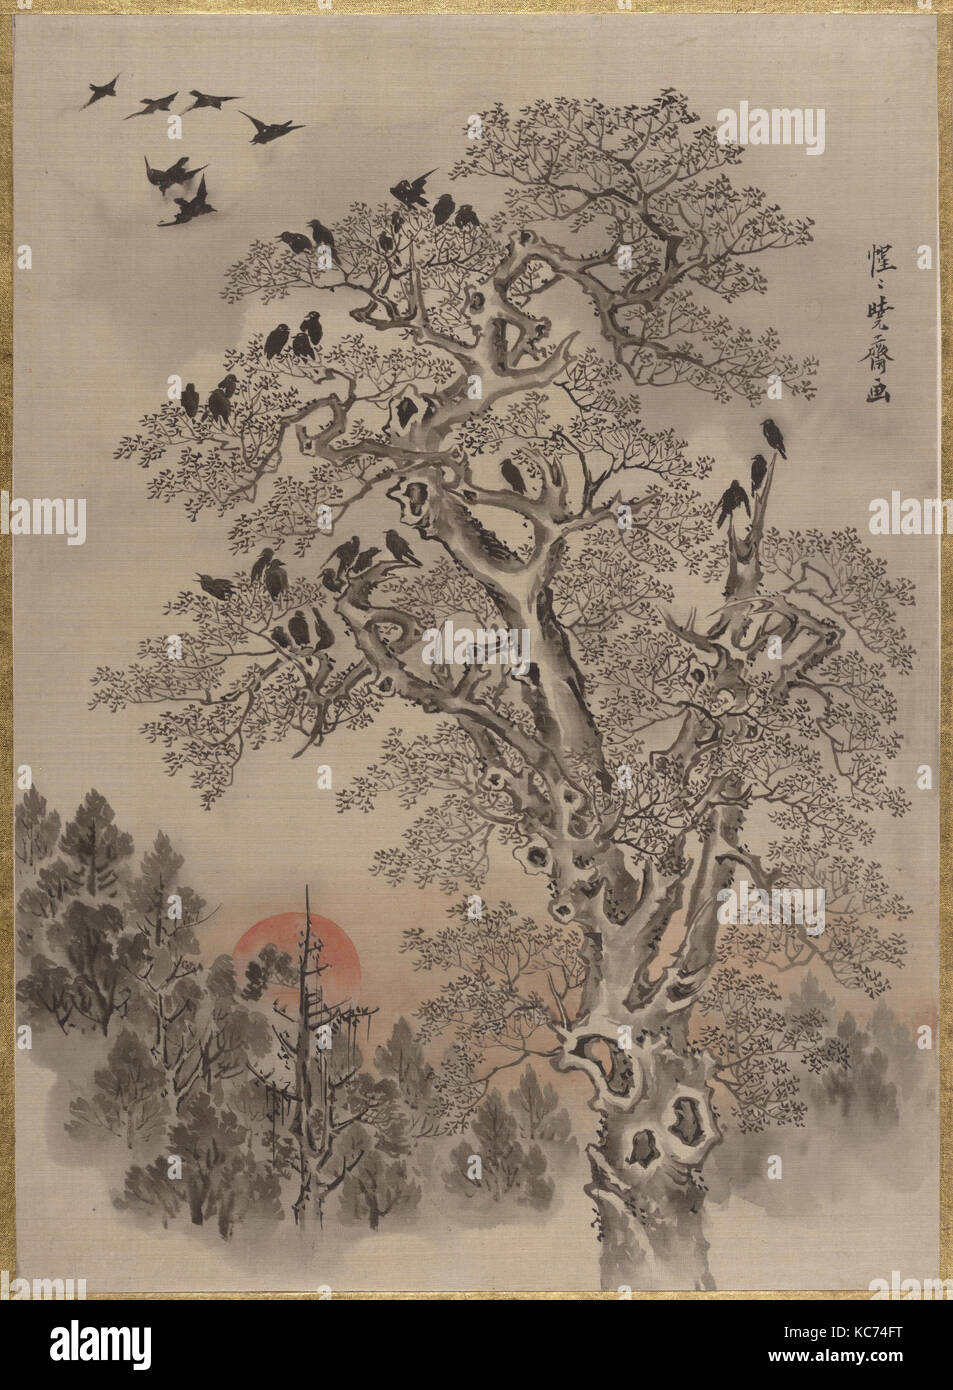 旭に群鴉図, Flock of Crows at Dawn, Kawanabe Kyōsai, ca. 1887 Stock Photo